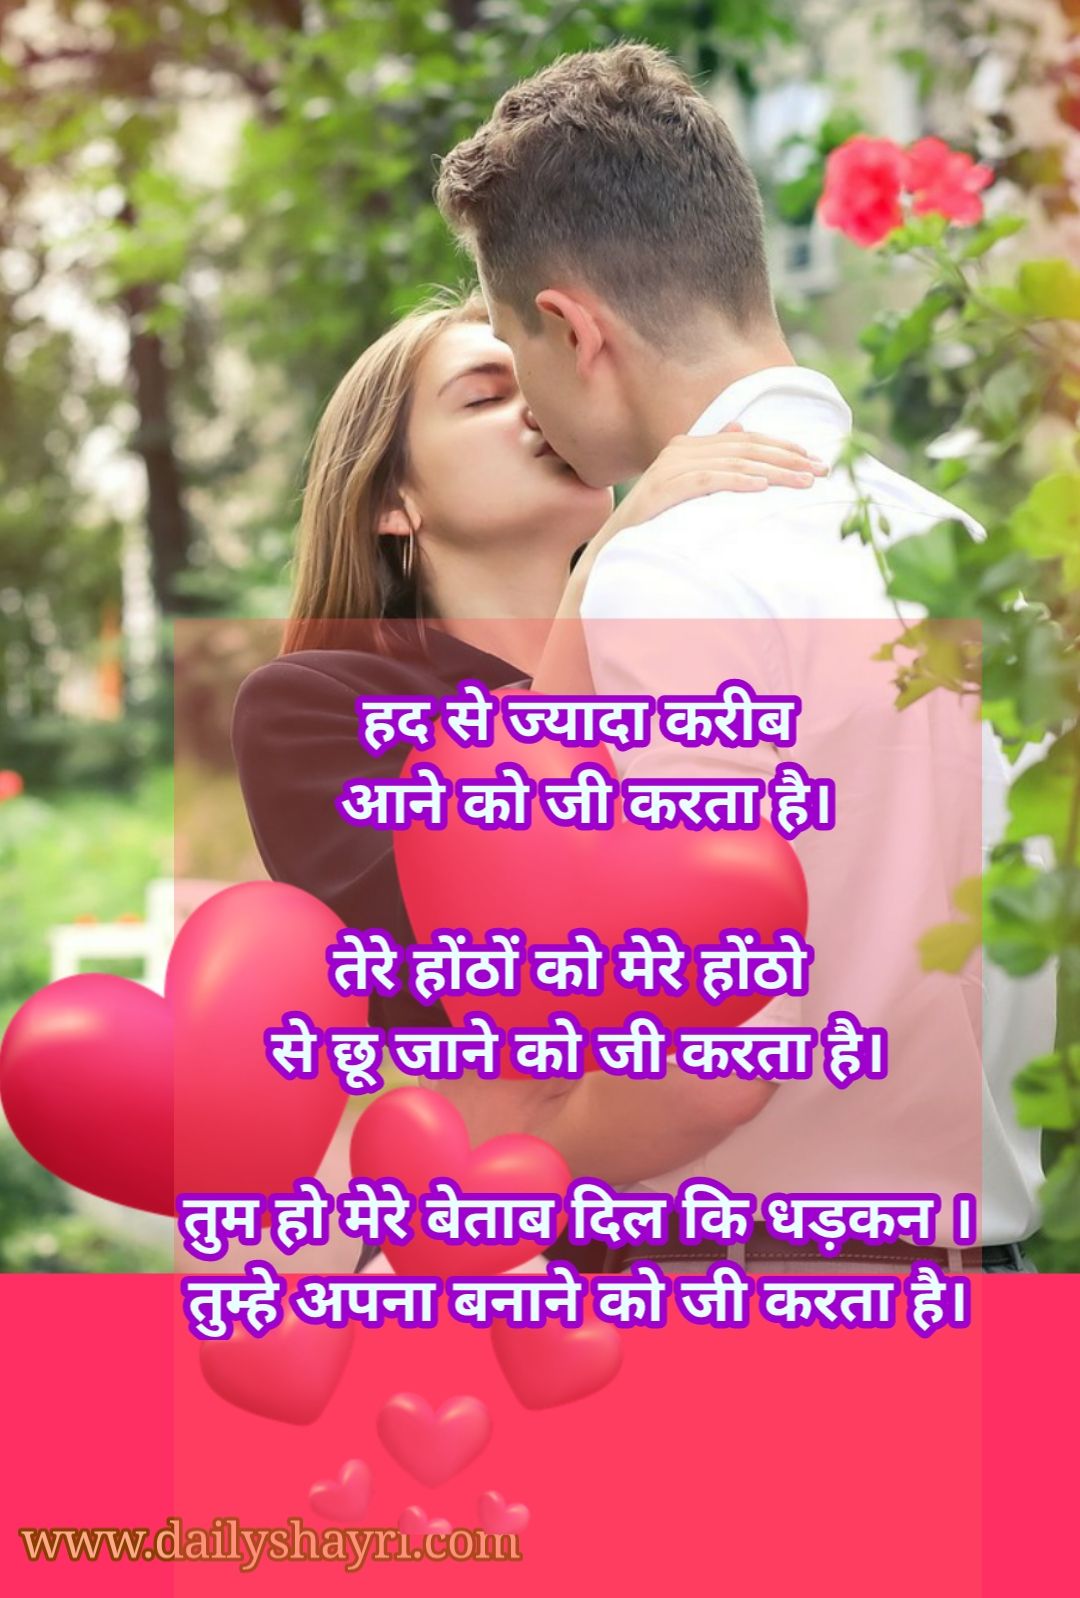 1000 Hindi Love Shayari Images Hd - Hindi Shayari Love Shayari Love Quotes Hd Images